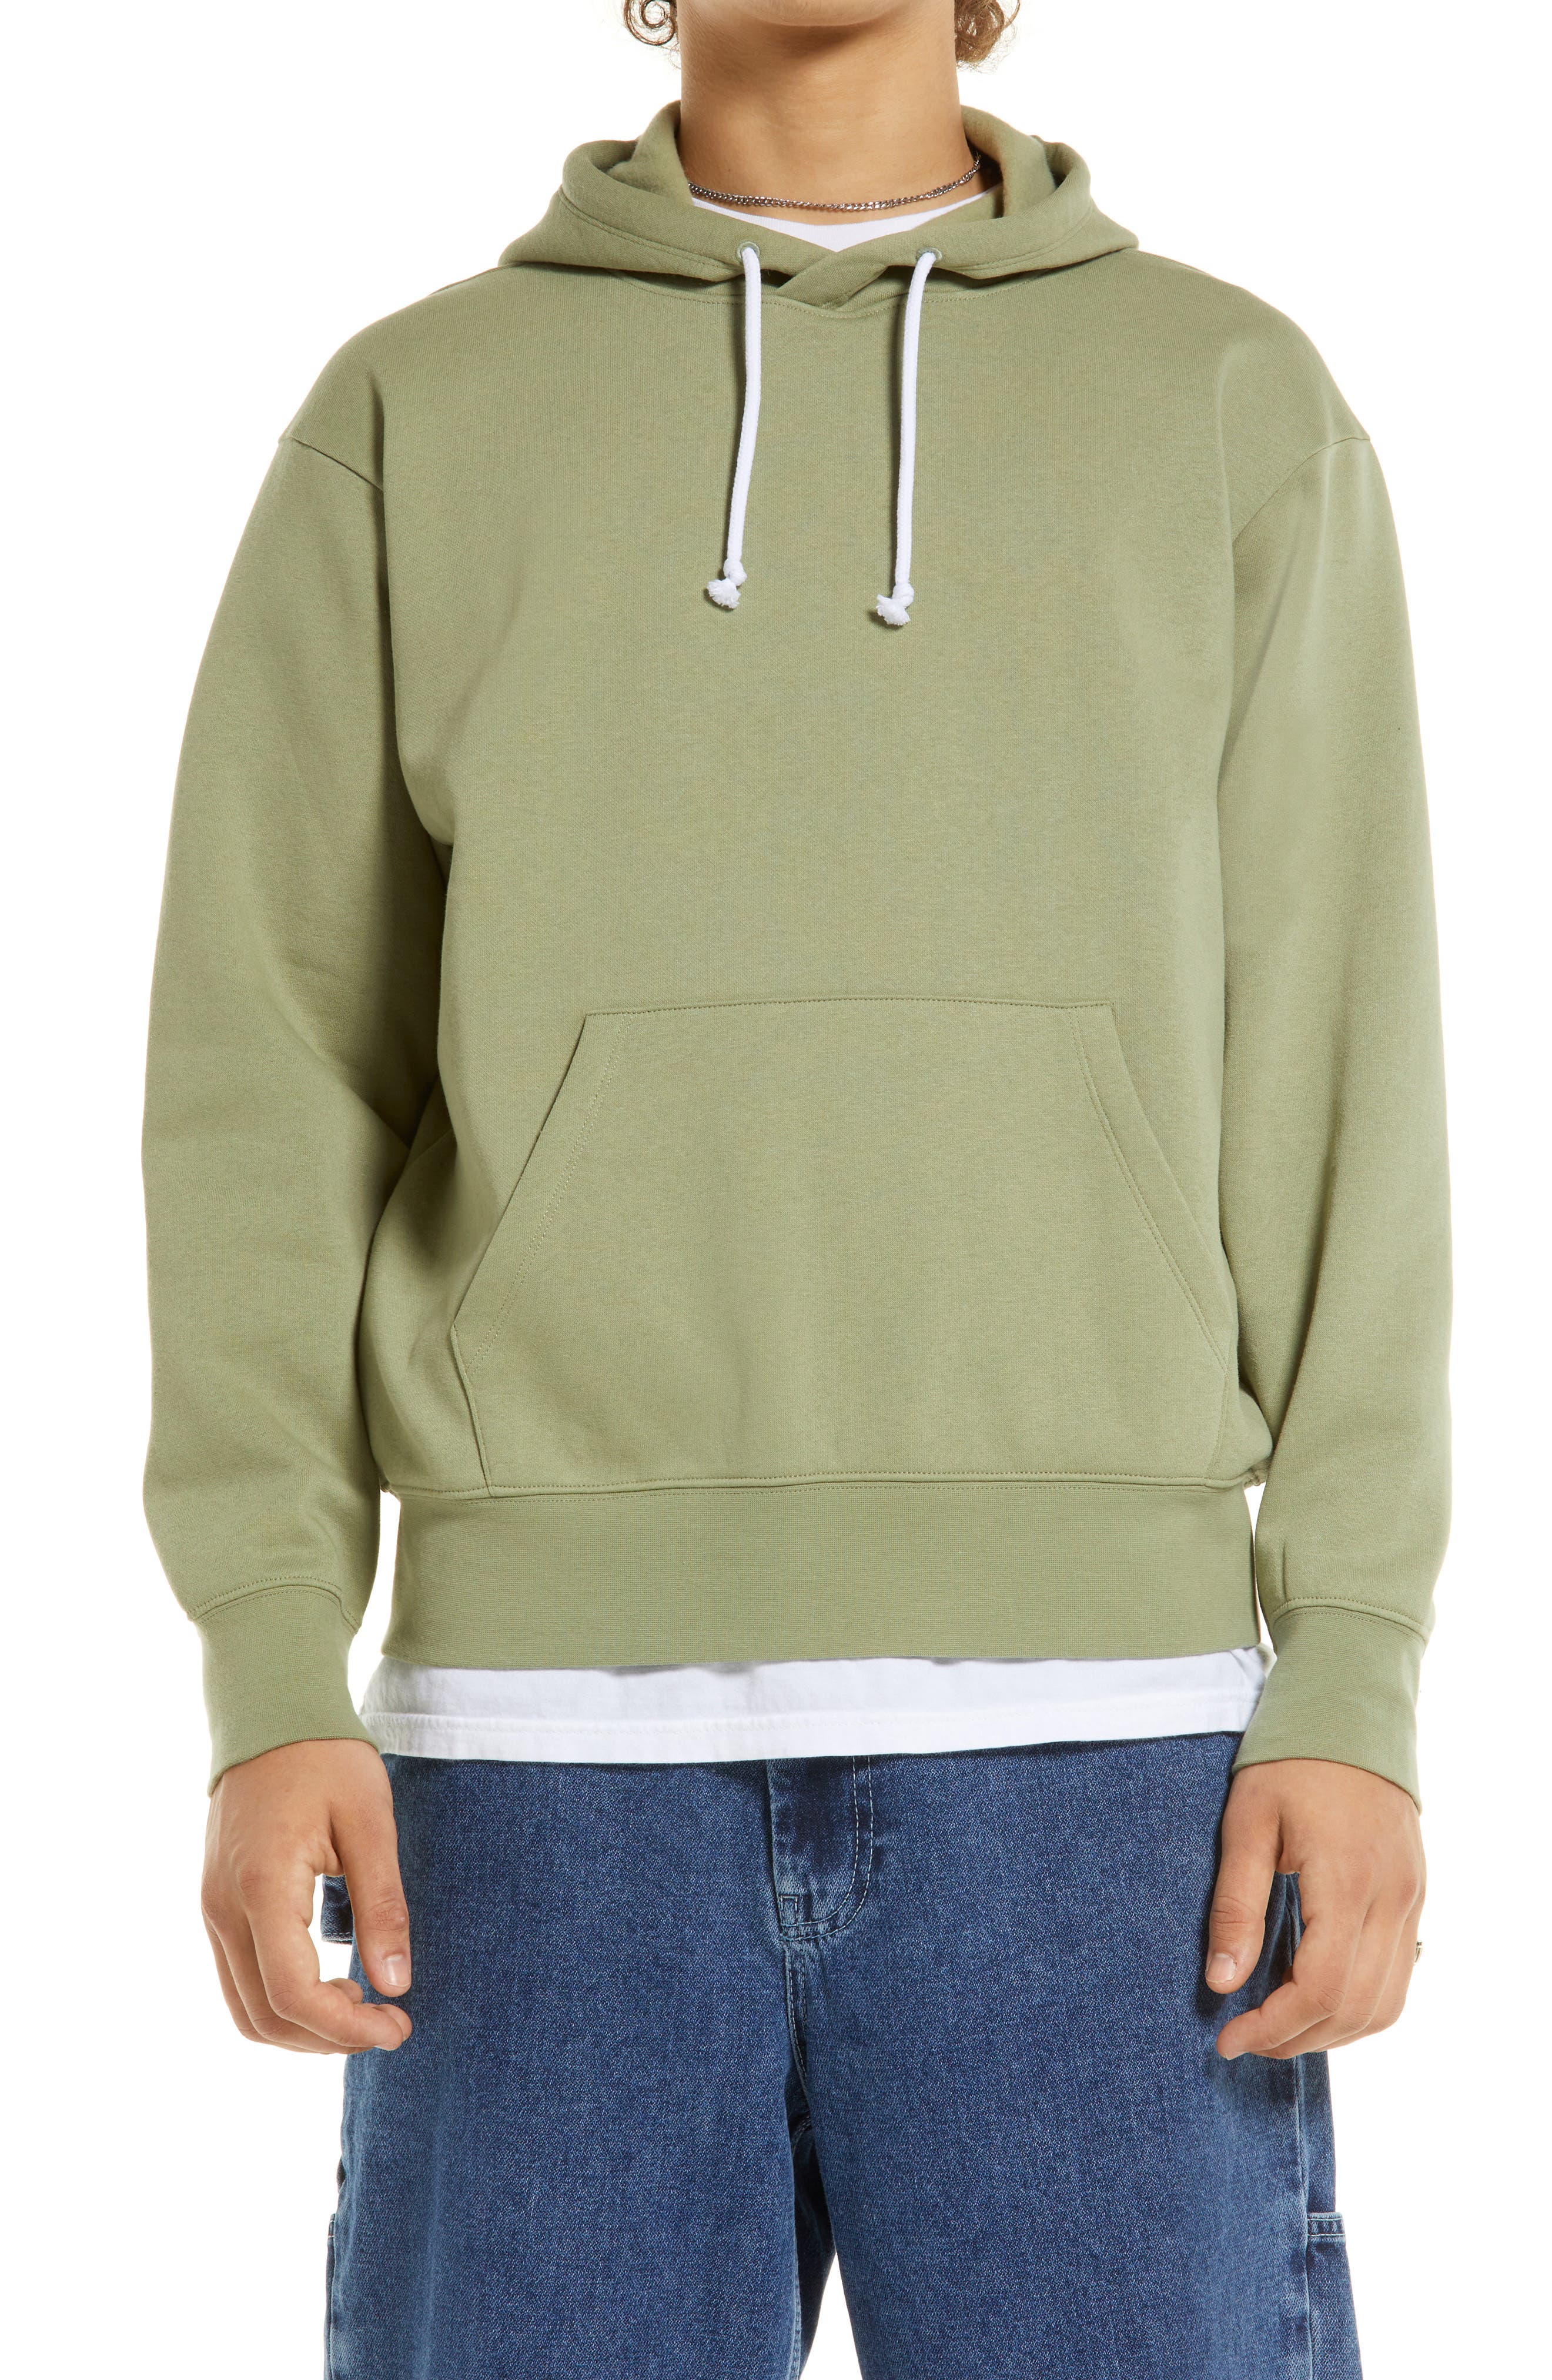 CQR Mens Outdoor Pullover Hoodie Performance Top Active Fleece Sweatshirt 